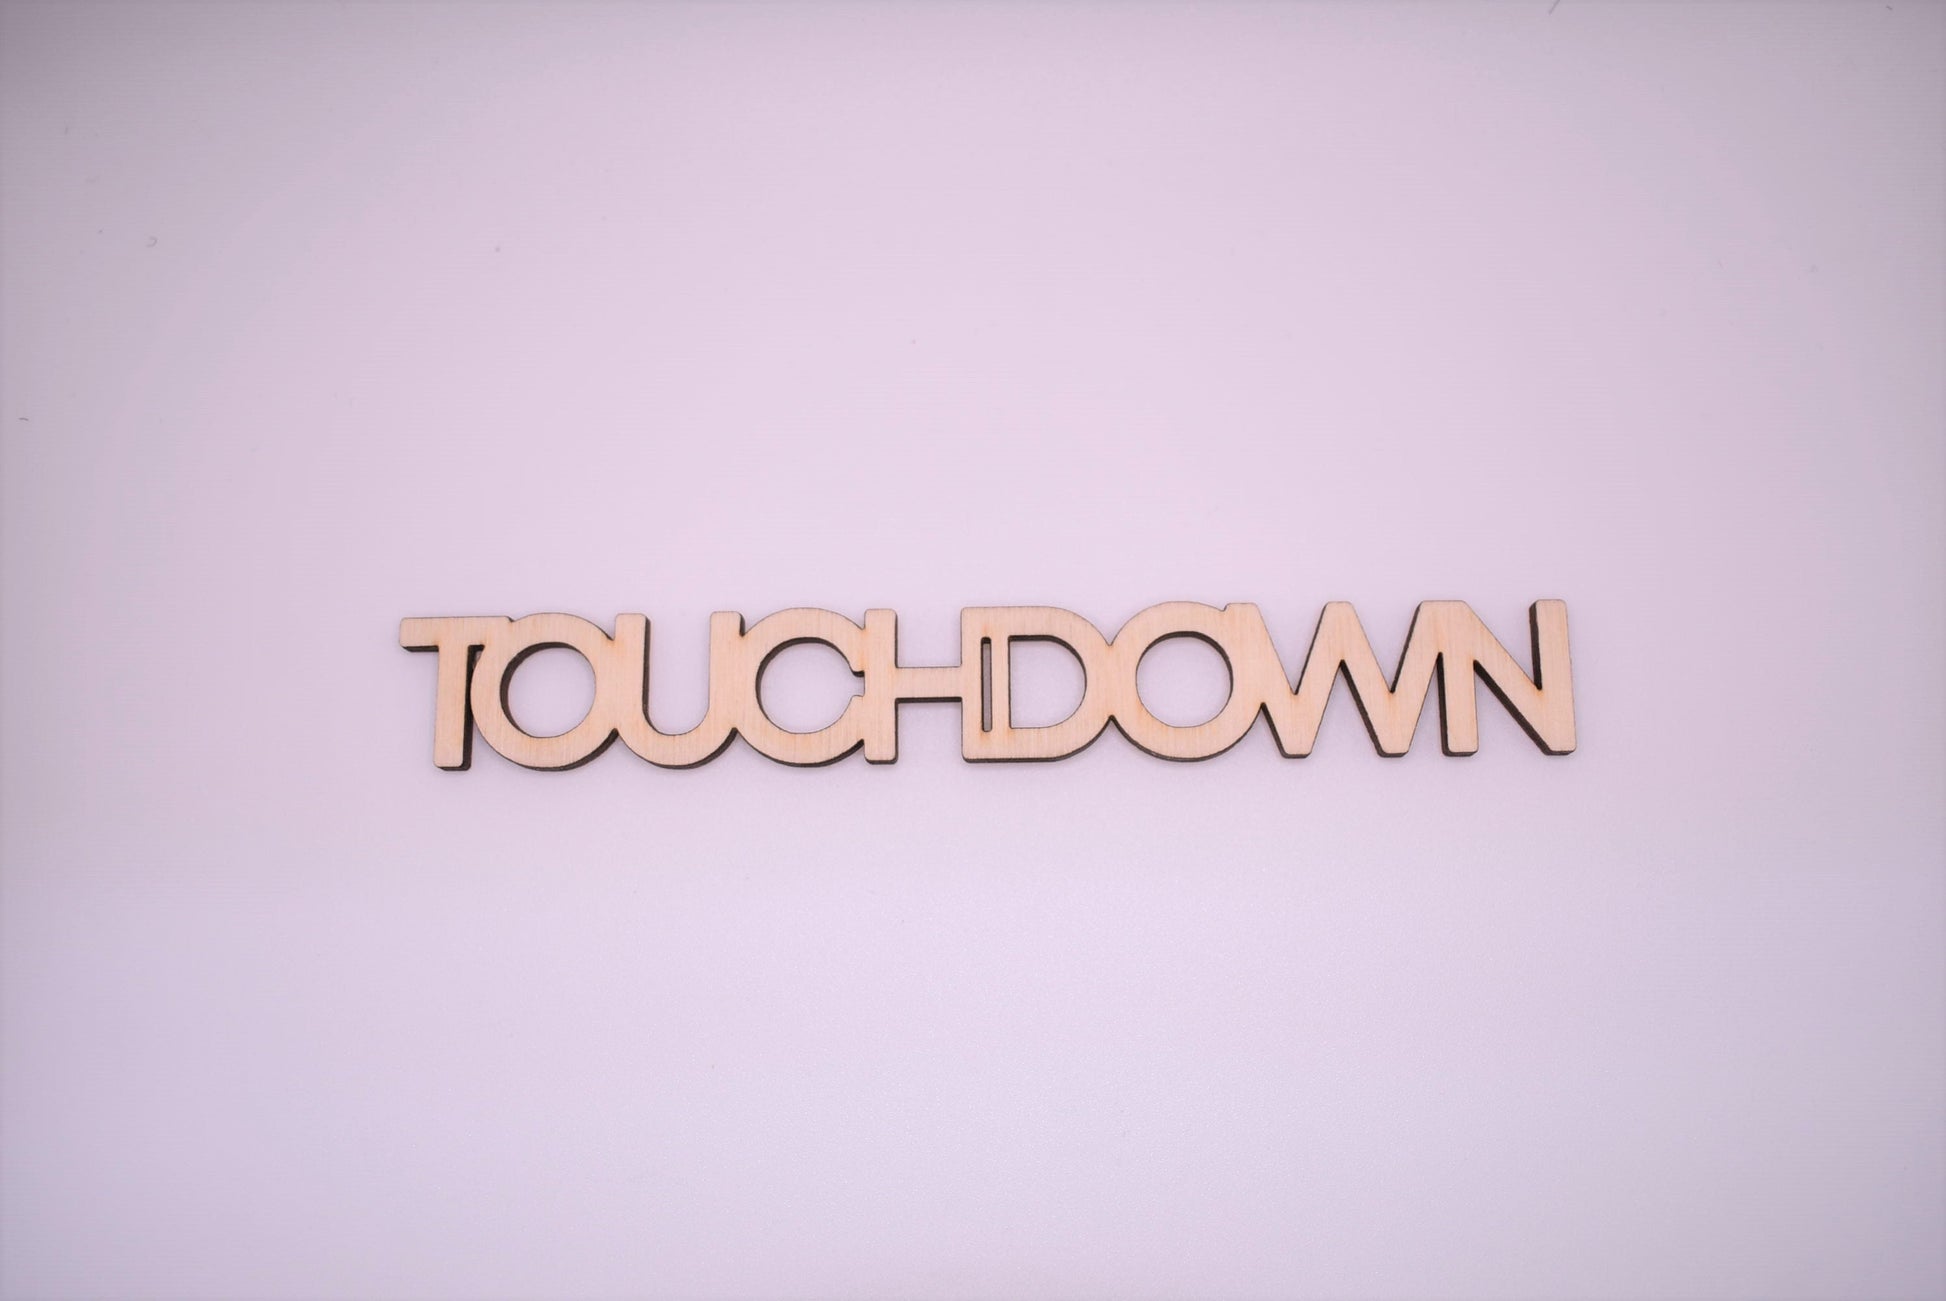 Touchdown - Creative Designs By Kari